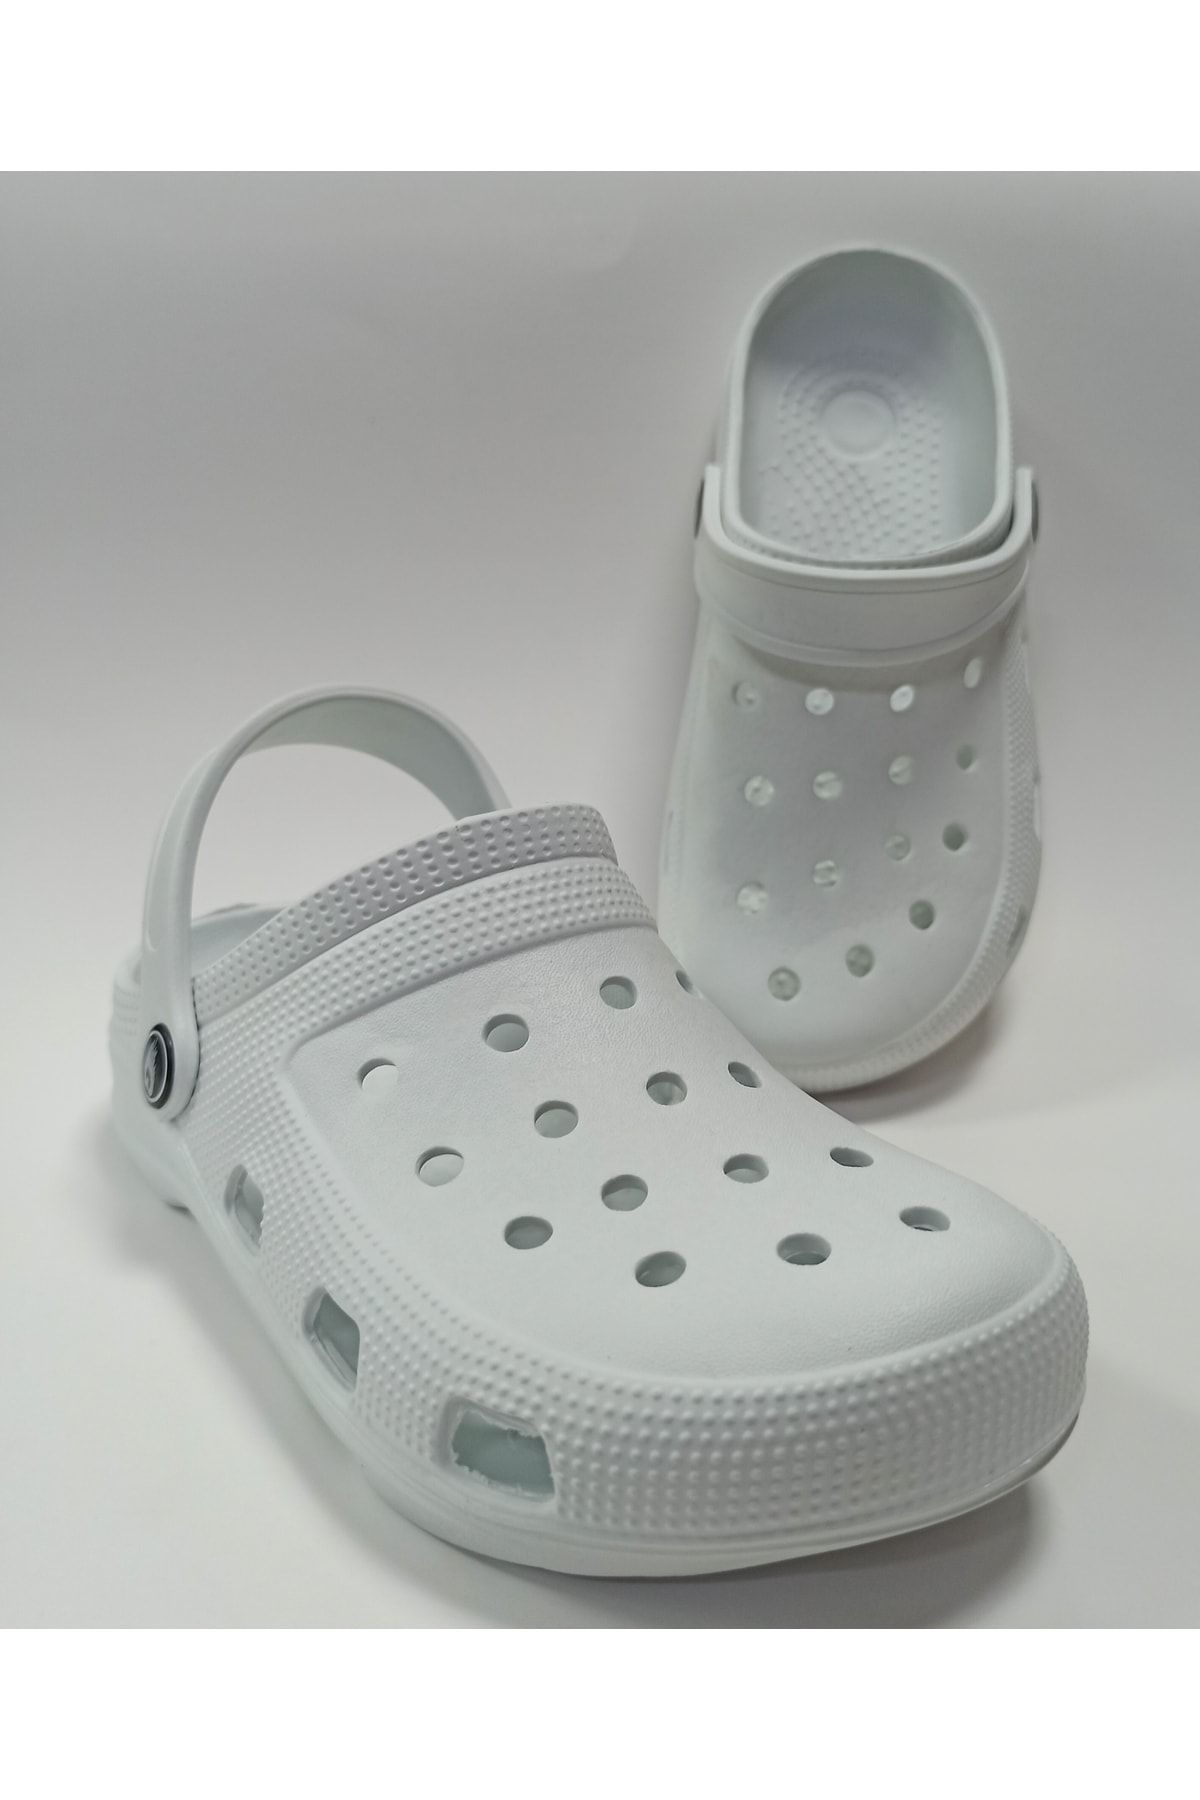 Gezer Crocs Modeli Hafif Ve Rahat Suya Dayanıklı Eva Unisex Beyaz Sandalet Terlik